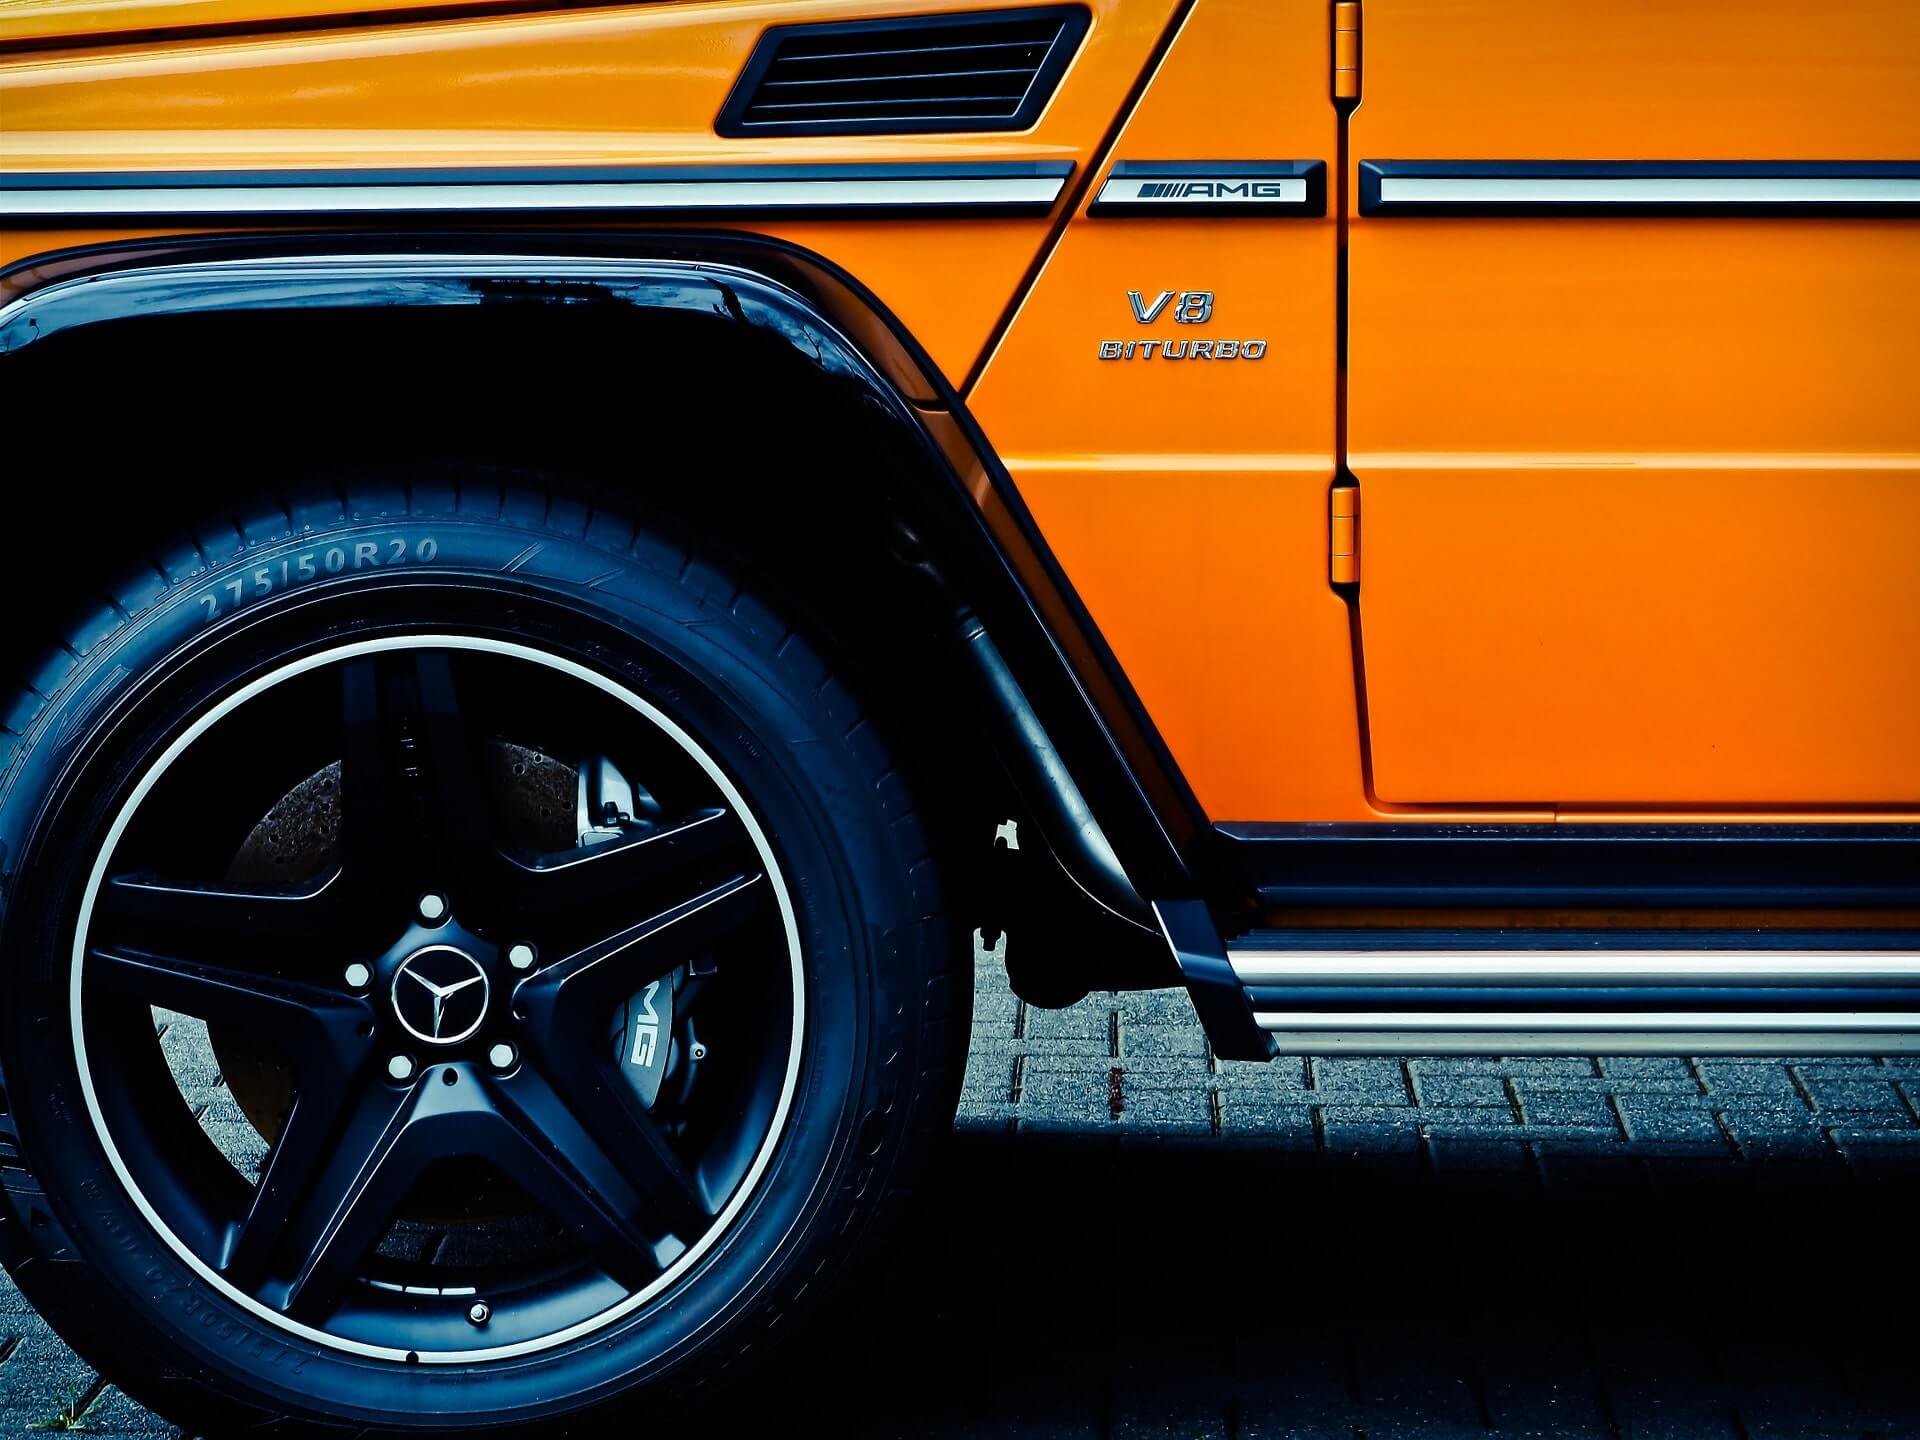 Impresionante rueda delantera izquierda negra, puerta parcial brillante y estribo plateado brillante de un SUV naranja